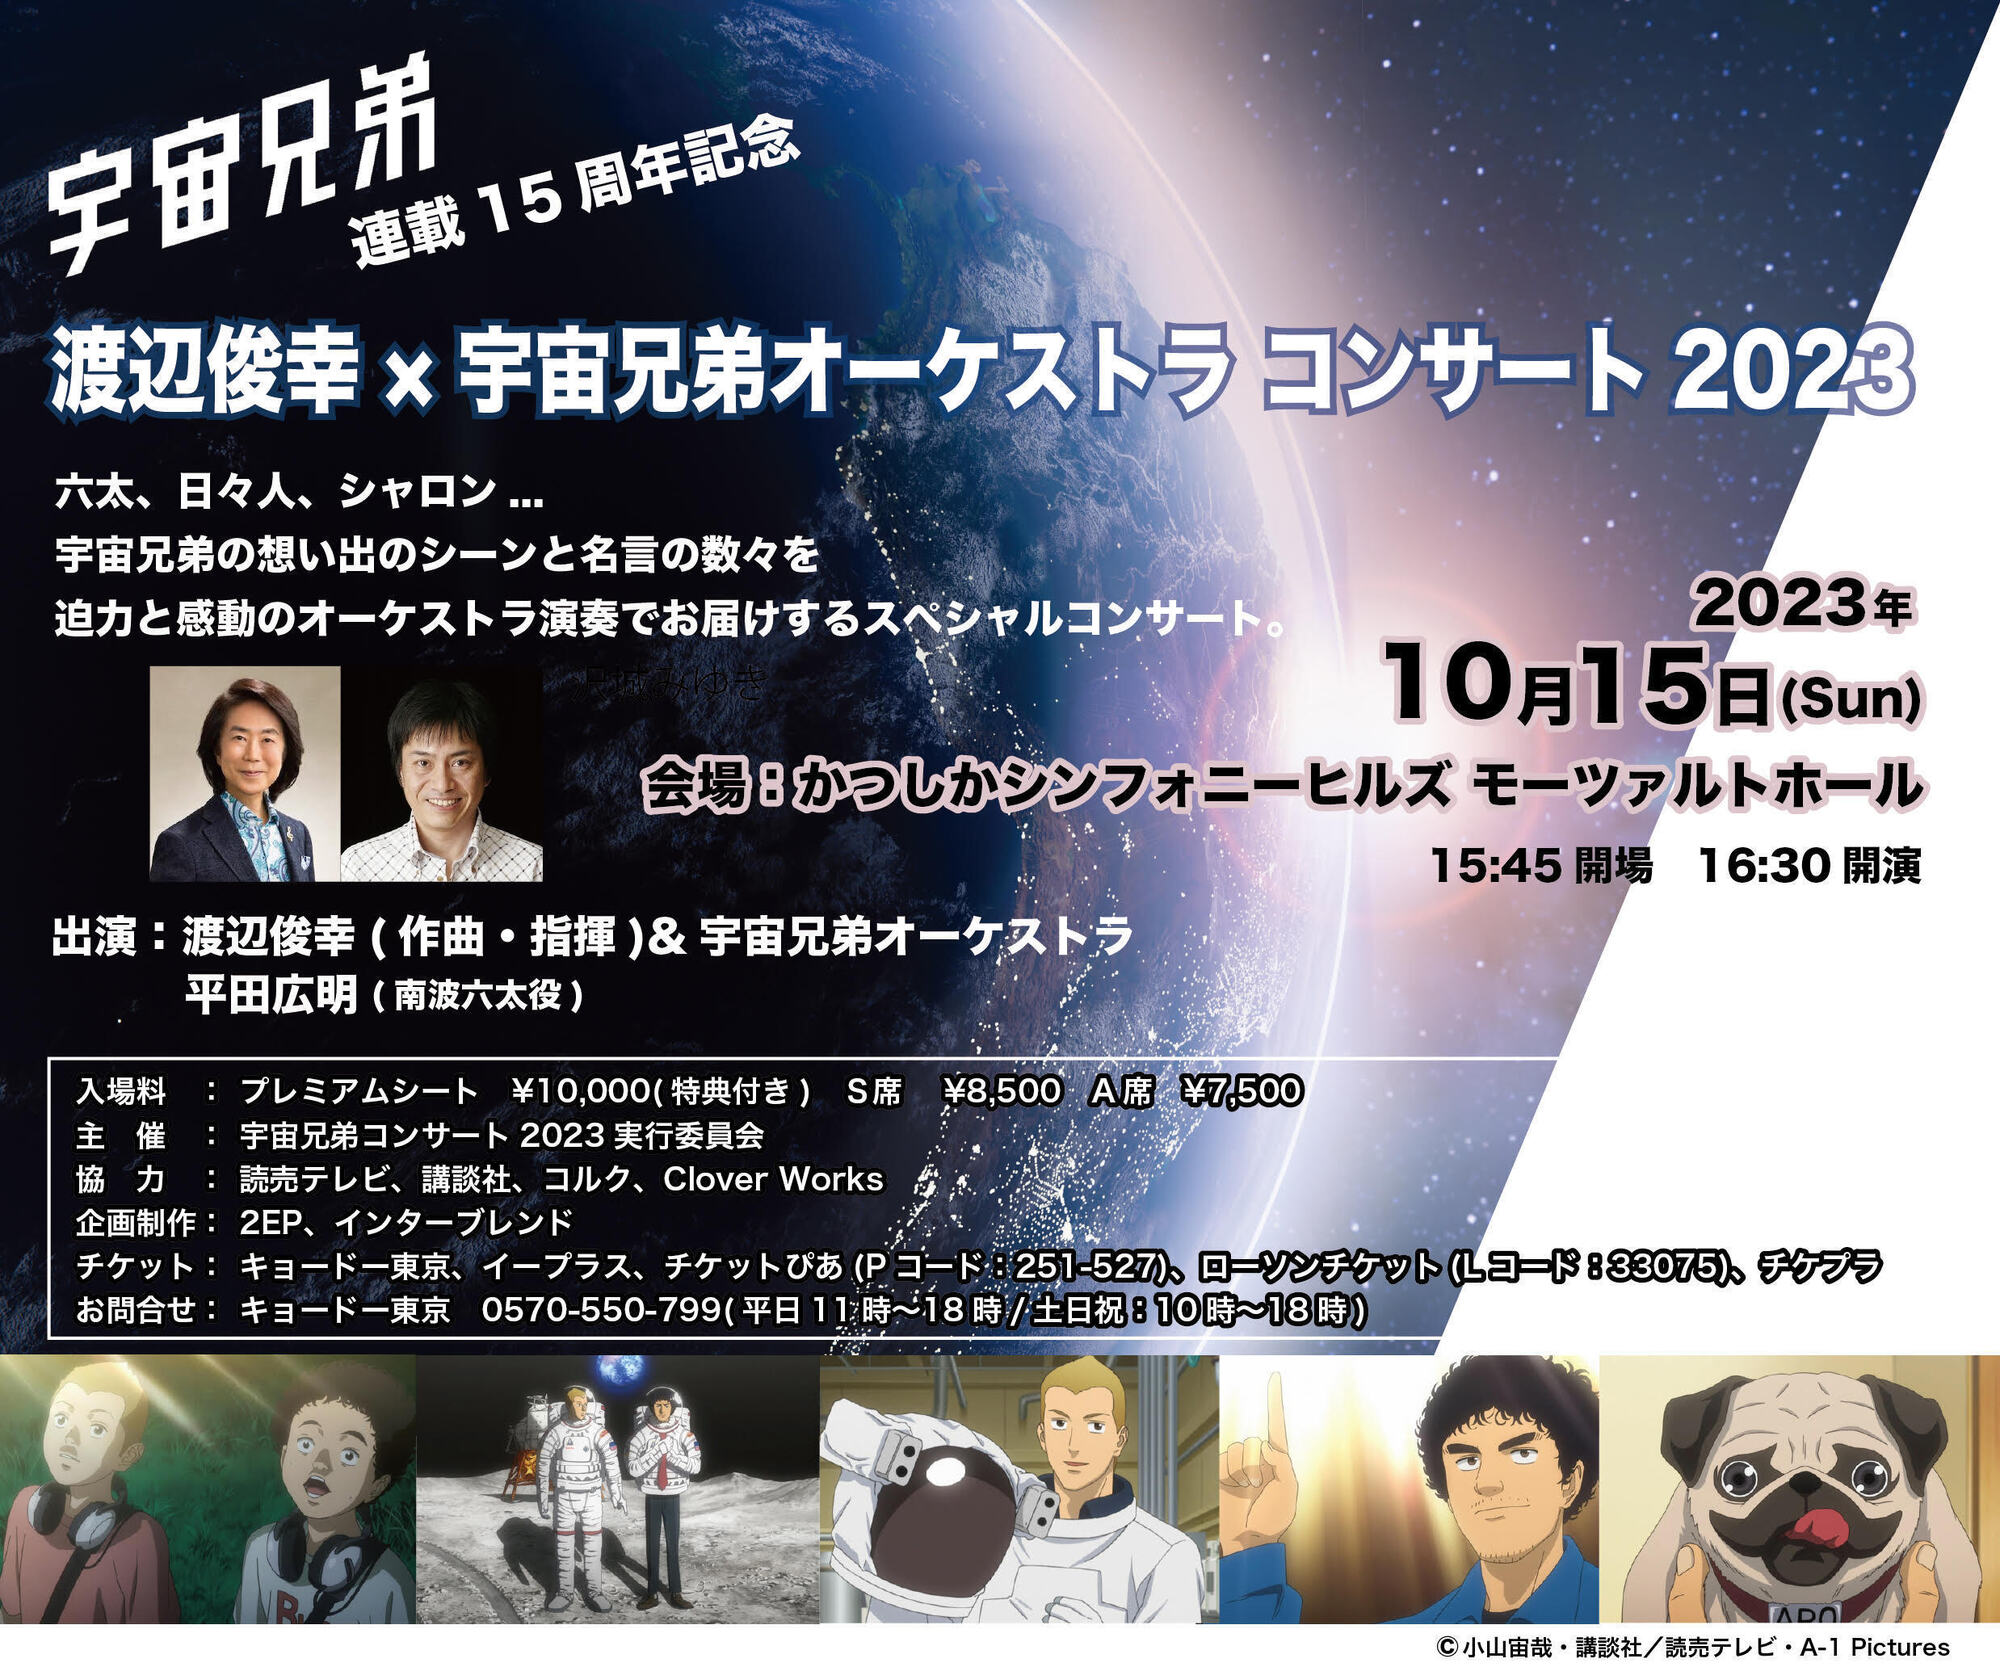 連載15周年記念 渡辺俊幸×宇宙兄弟オーケストラコンサート 2023 チケット先行抽選販売を開始しました。